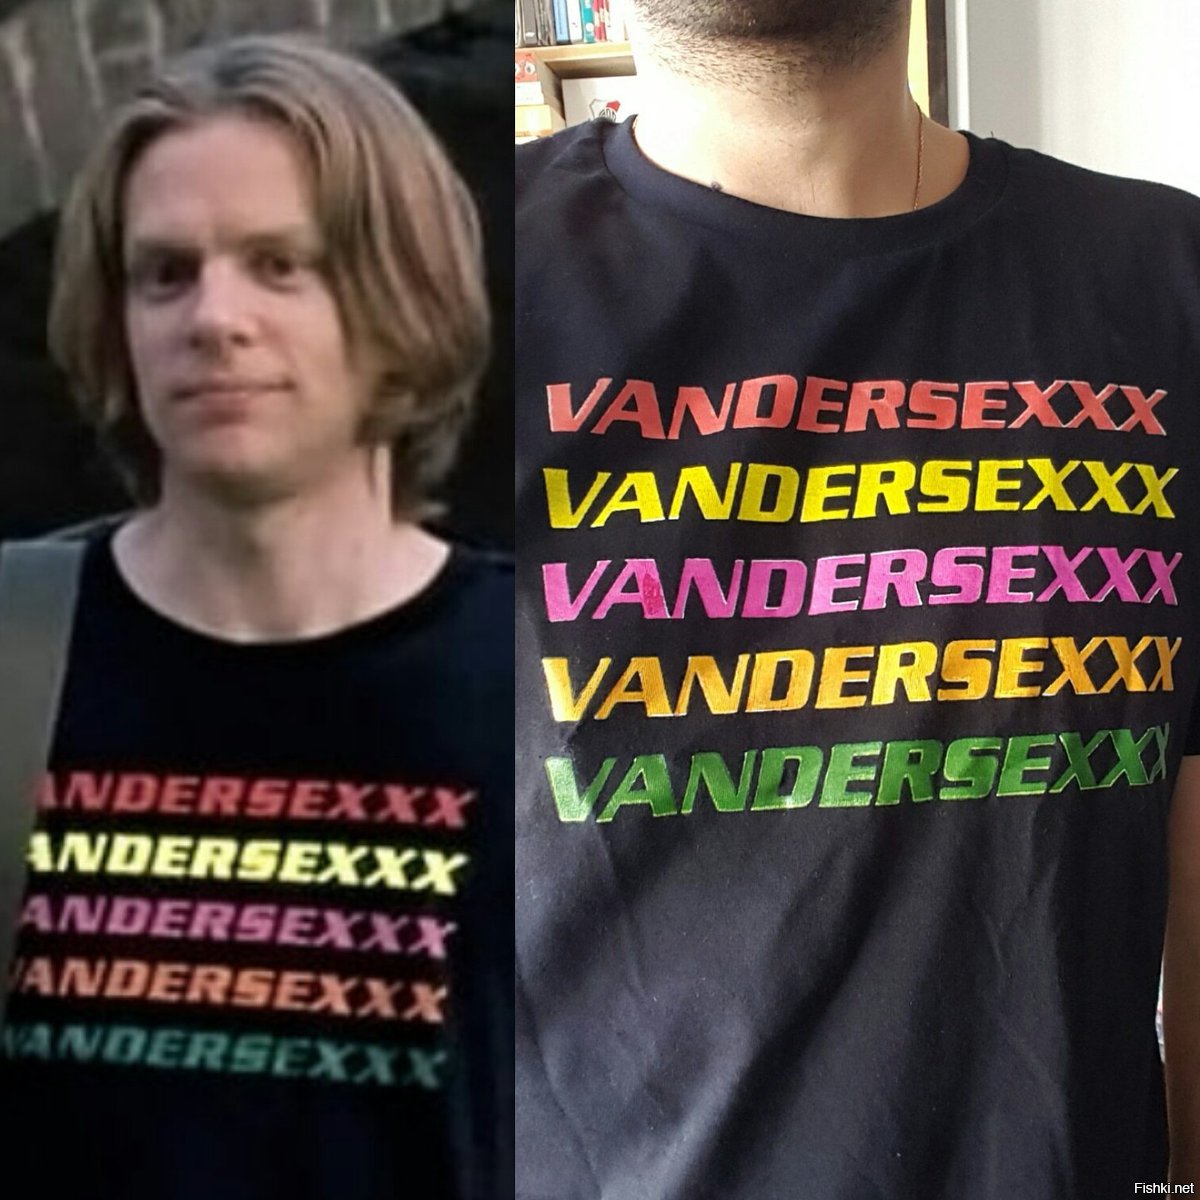 Vandersex us.ryah.com: Vandersexxx